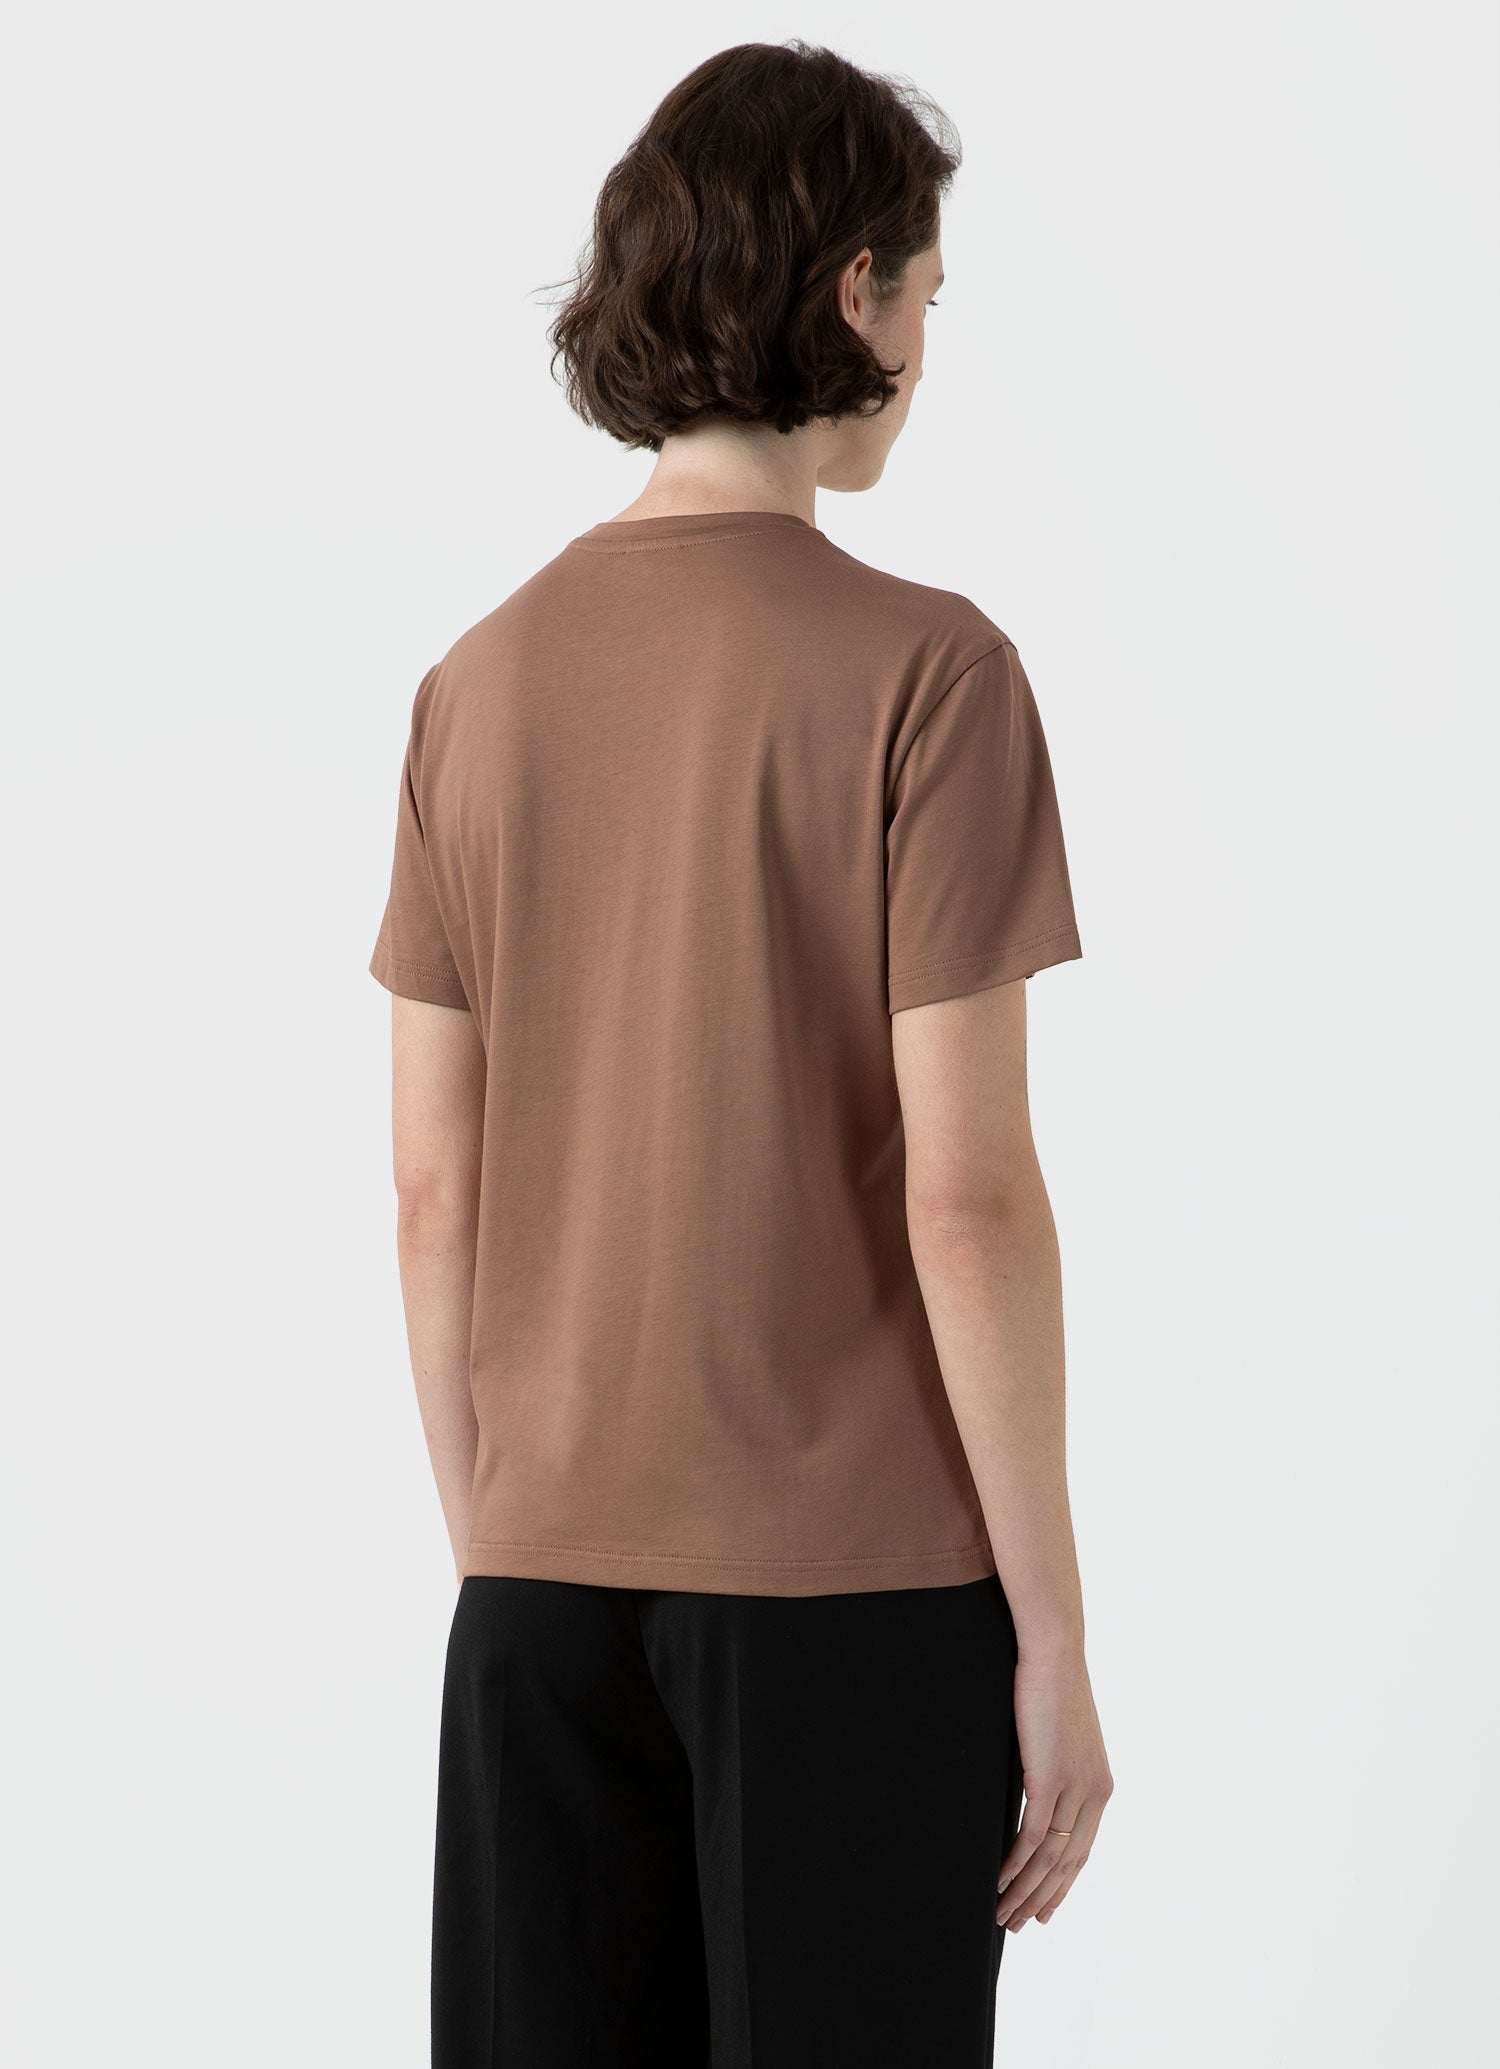 Women's Boy Fit T-shirt in Dark Sand